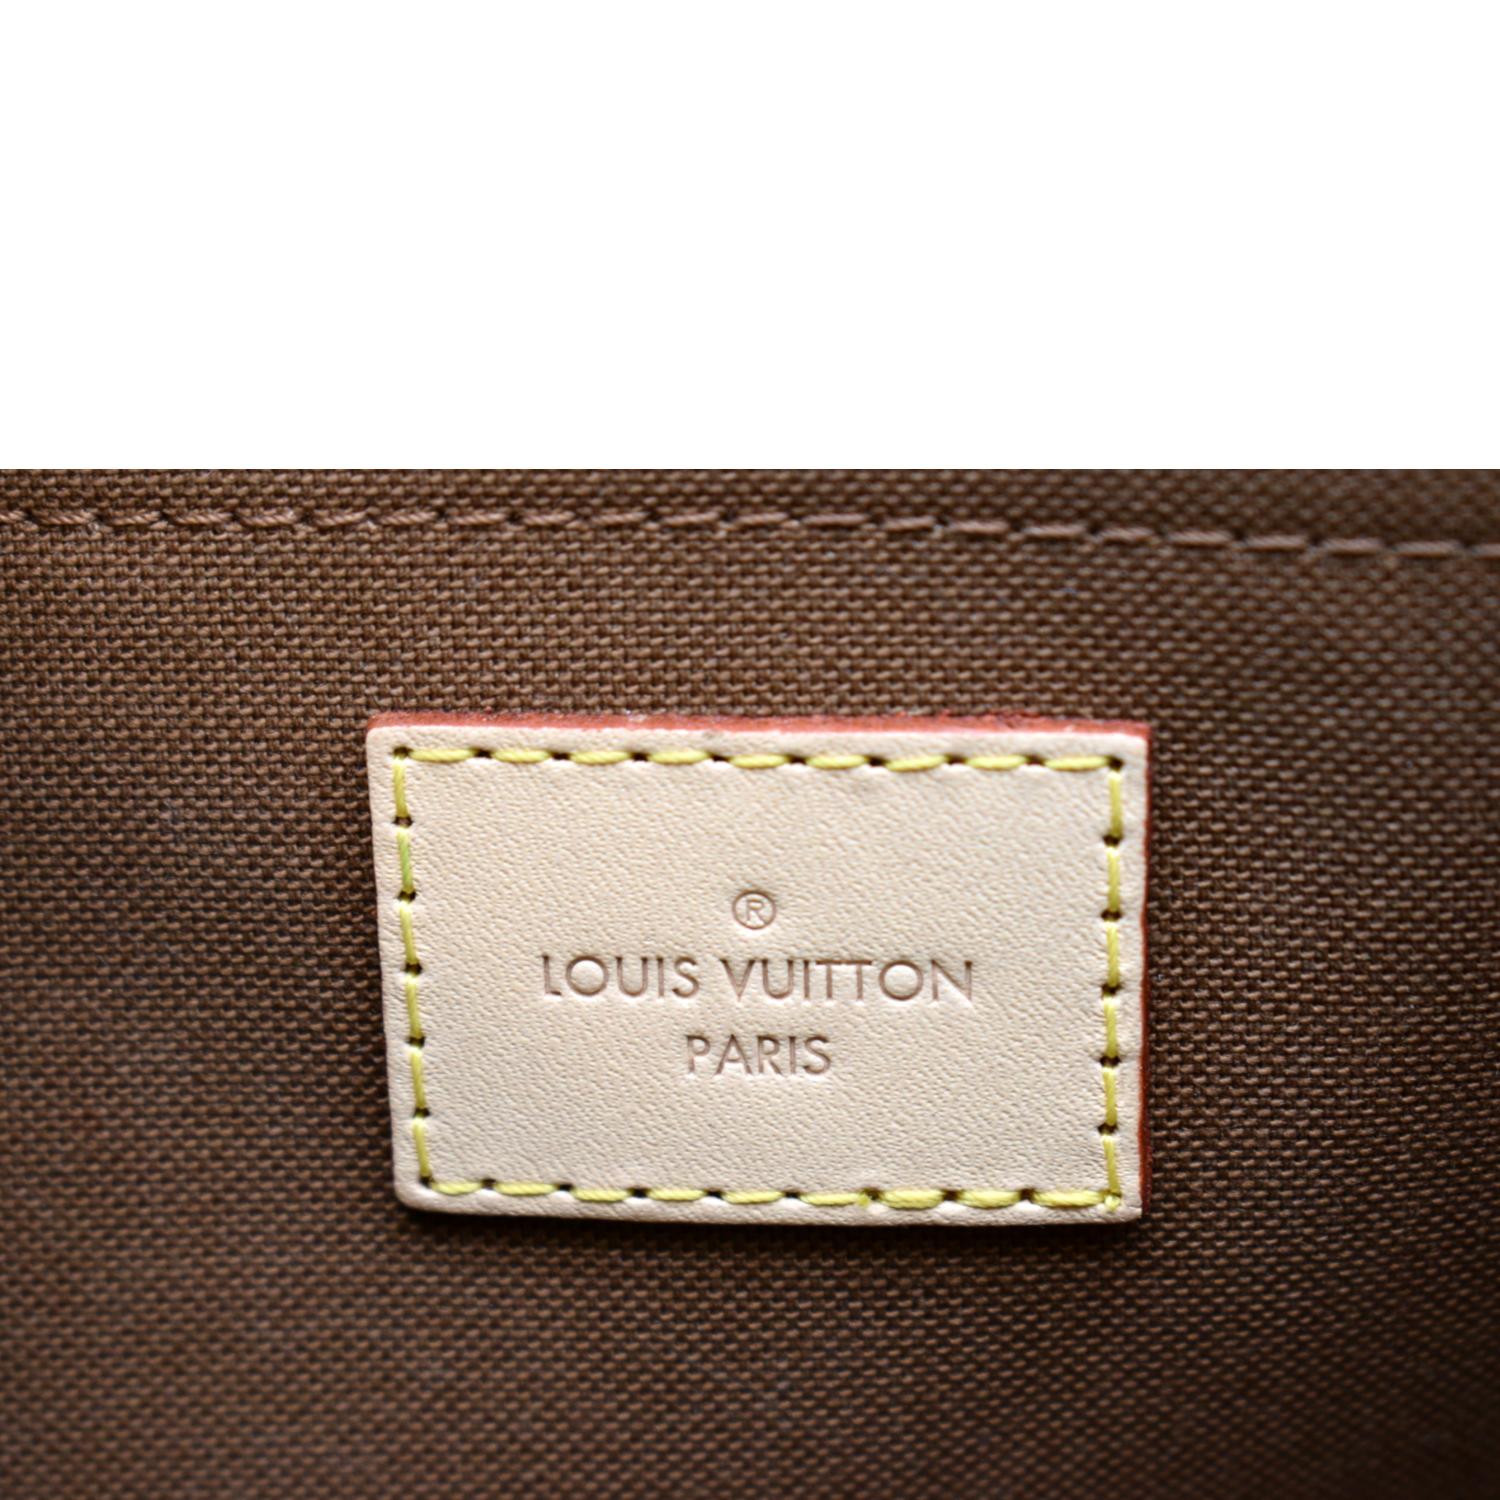 New hot item 💥 LV multi pochette 😍 📸@carodaur #LV #lvmultipochette  #lvbag #louisvuitton #PersonalS…